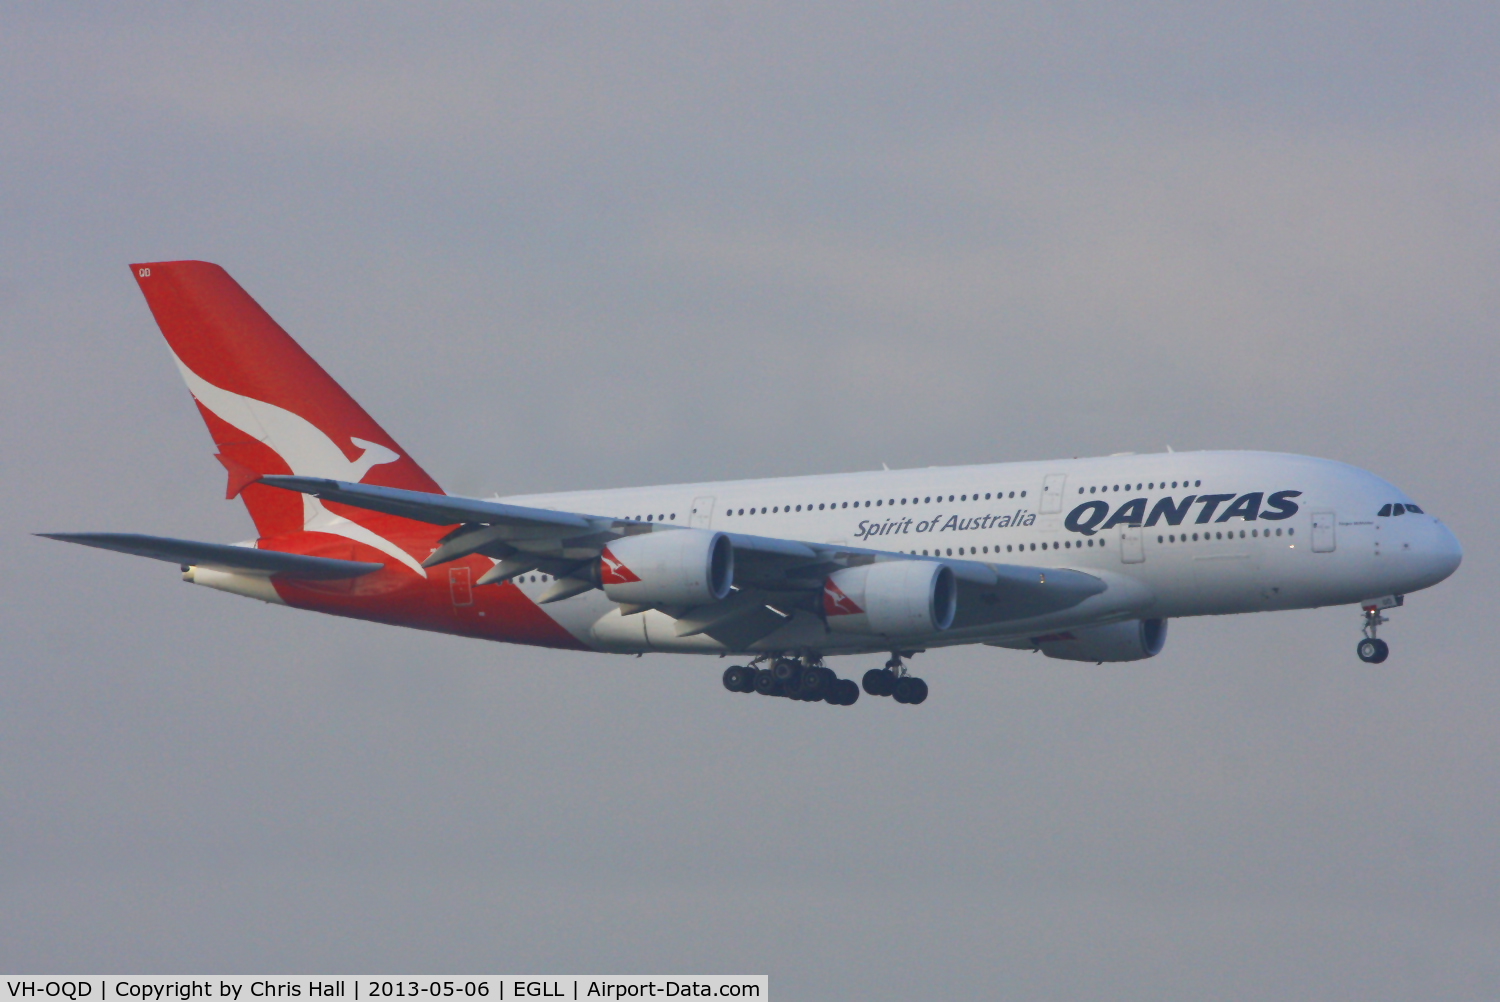 VH-OQD, 2008 Airbus A380-842 C/N 026, Qantas